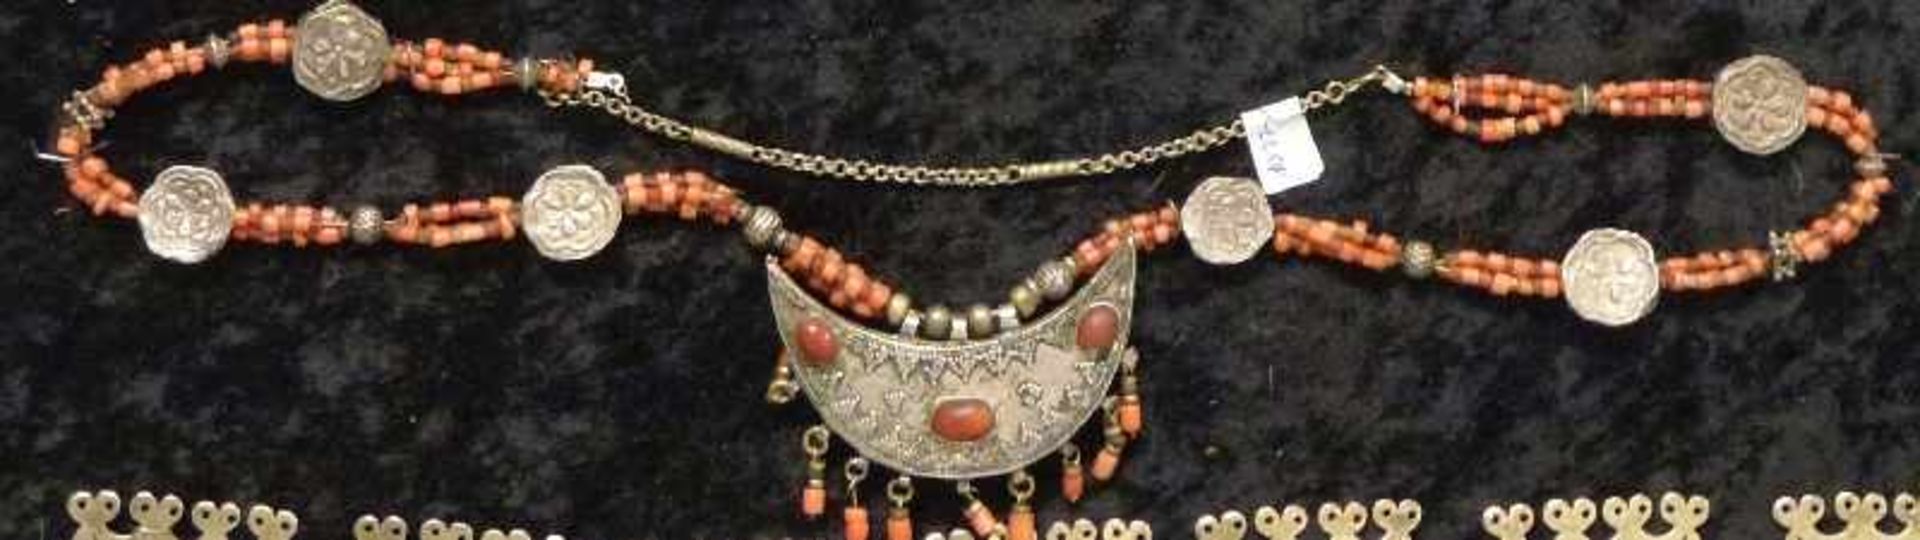 turkmenische Hochzeitskette Silber, mittig sichelförmiges Amulett, karneolbesetzt, 3 strängige